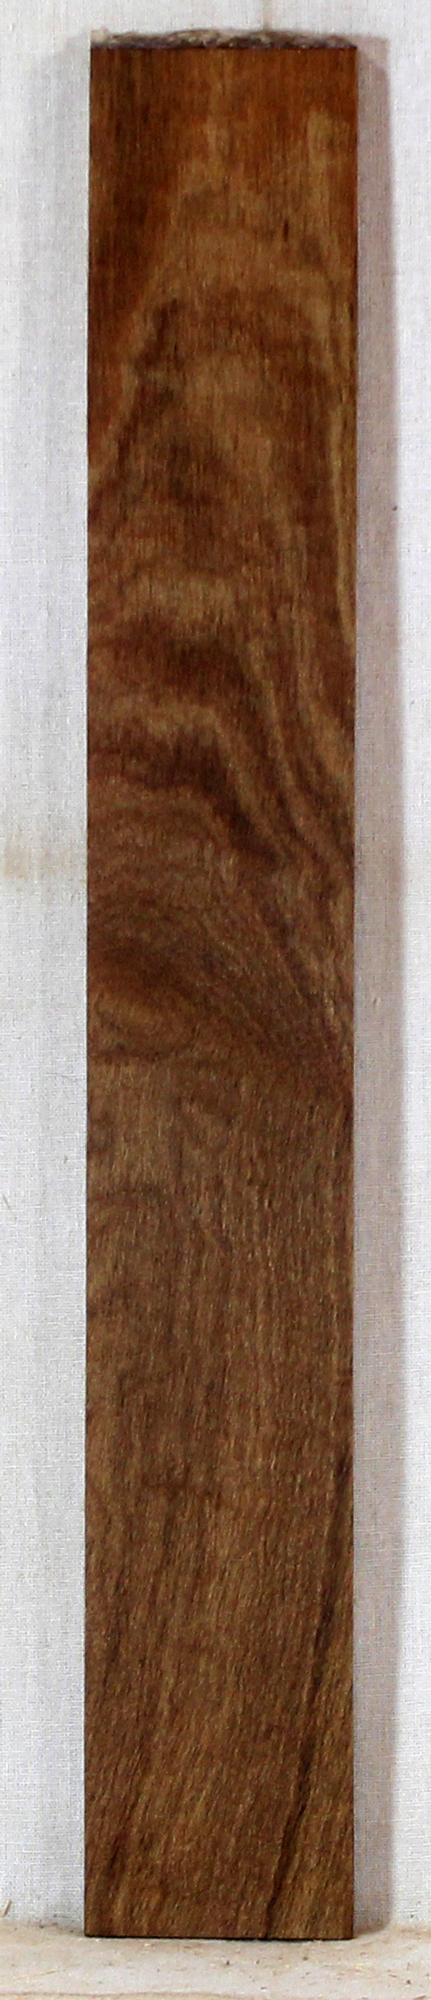 Maple Ukulele Fingerboard Stabilized (EG90)